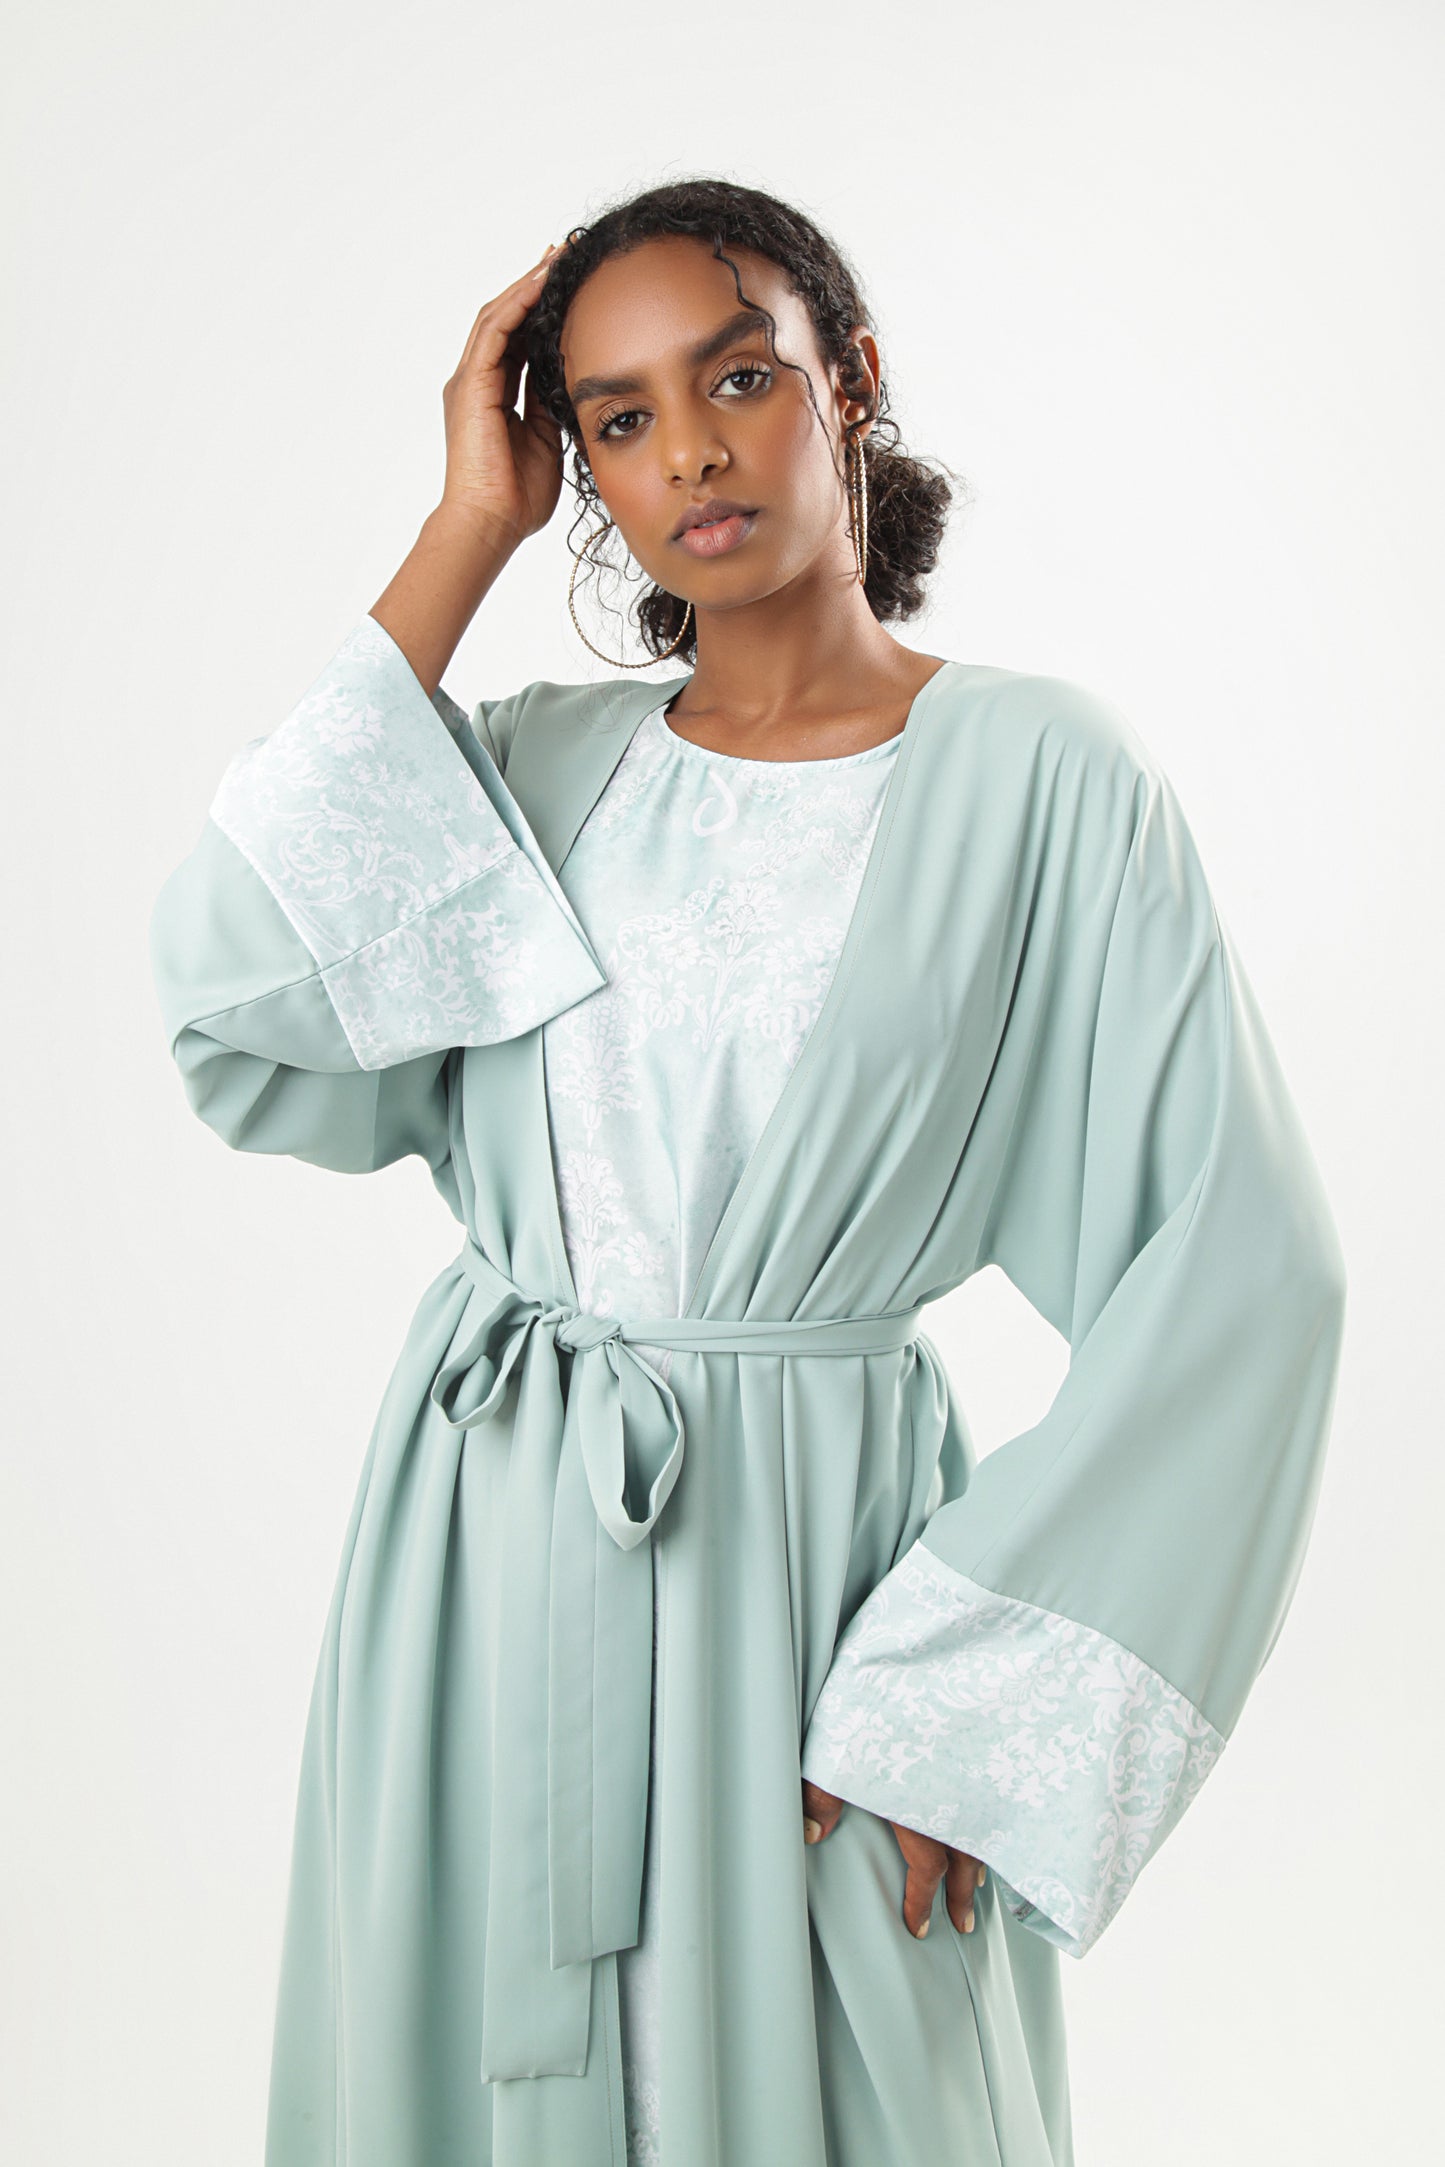 Belted Abaya Design Color